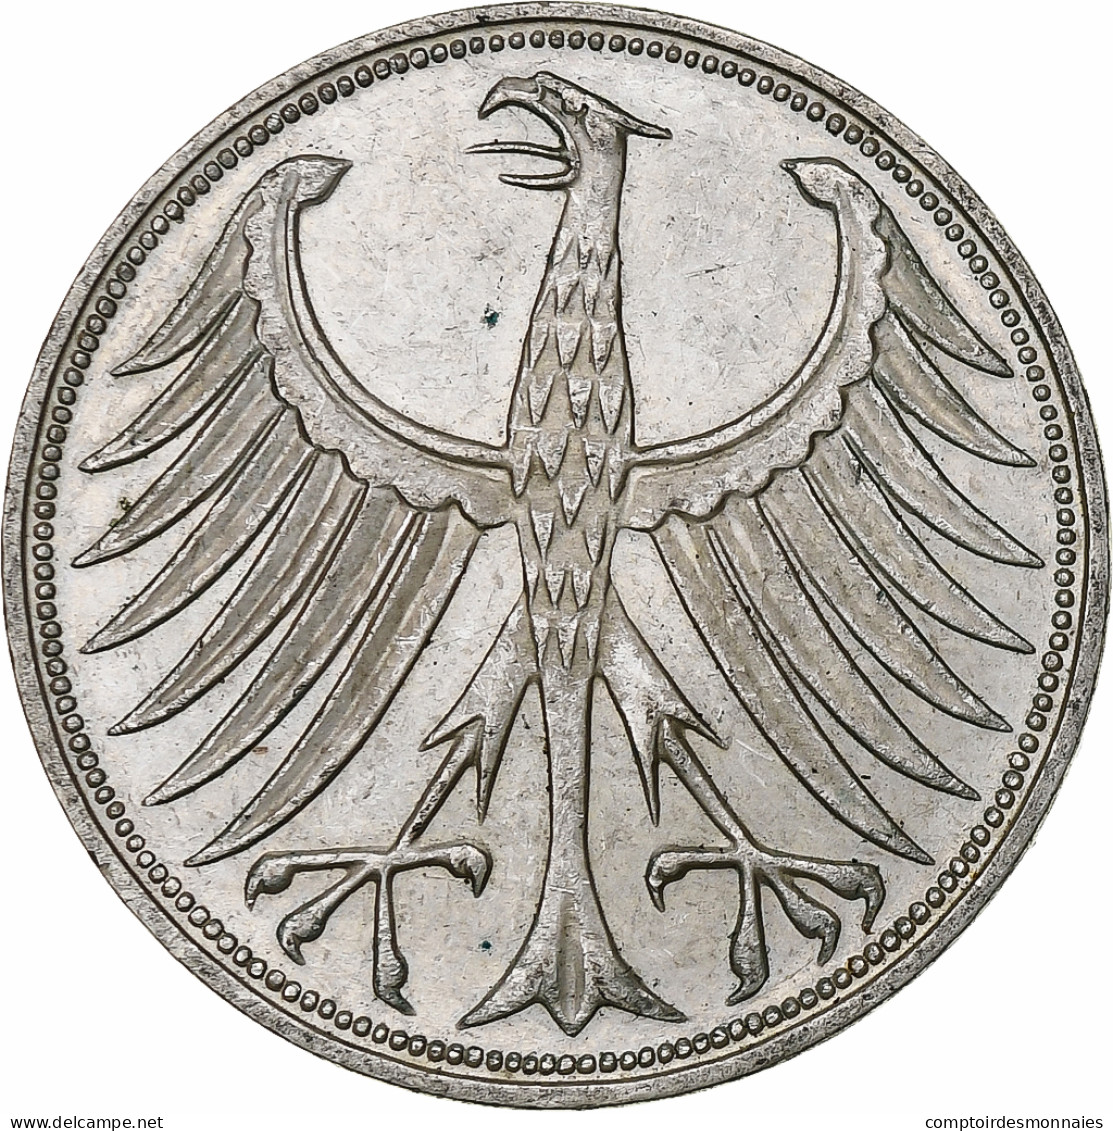 République Fédérale Allemande, 5 Mark, 1968, Stuttgart, Argent, SUP, KM:112.1 - 5 Marcos